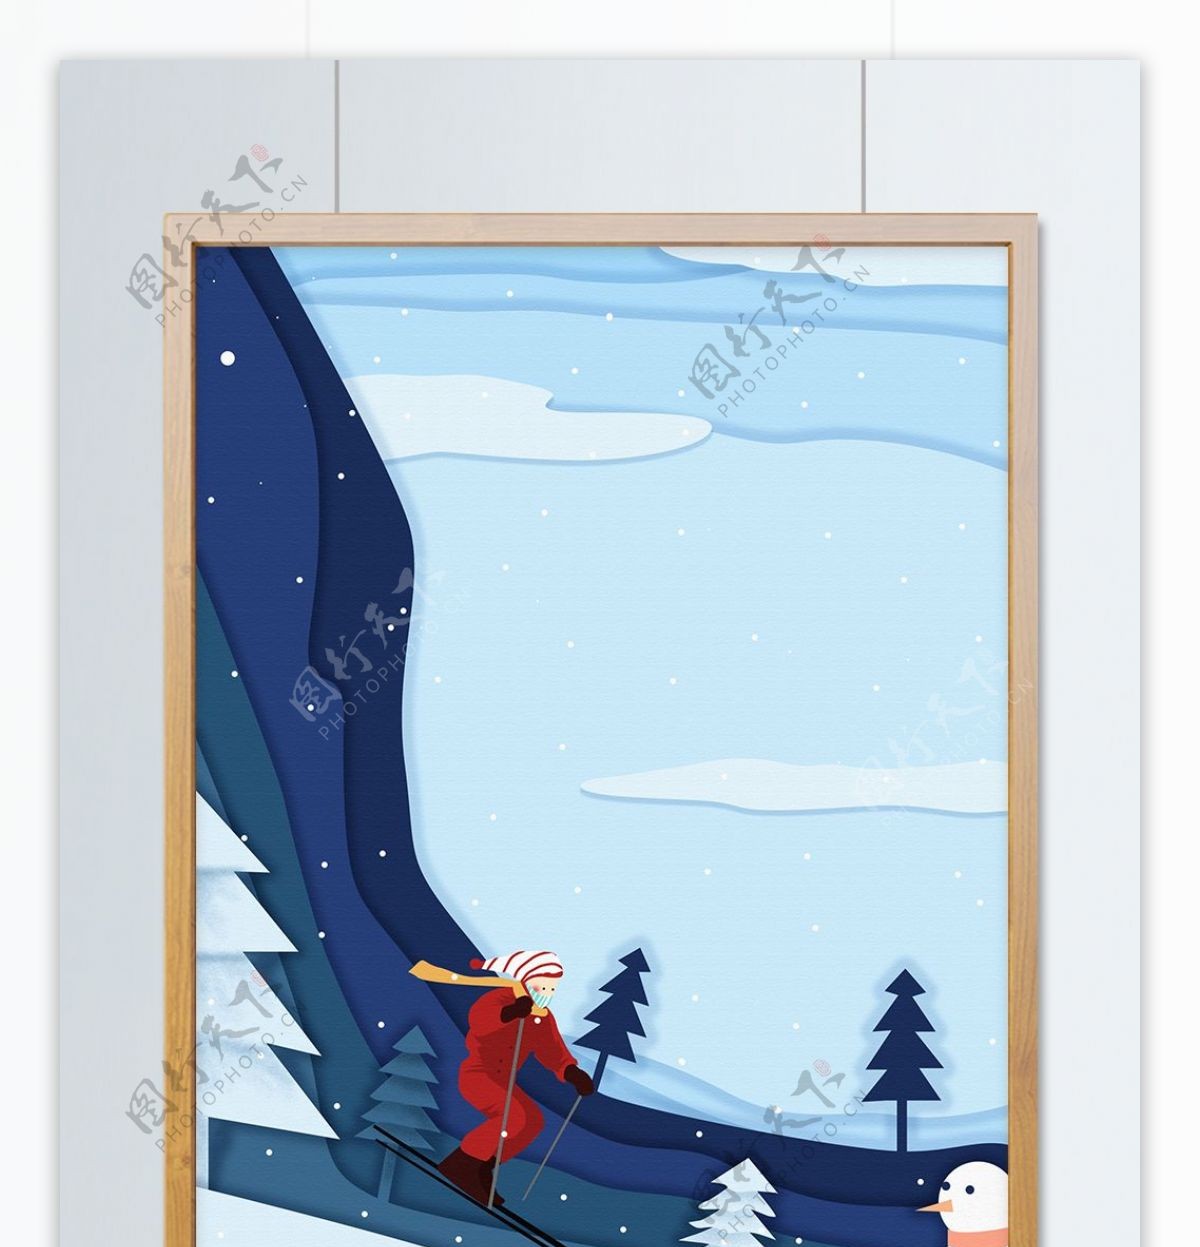 滑雪场景剪纸风原创插画